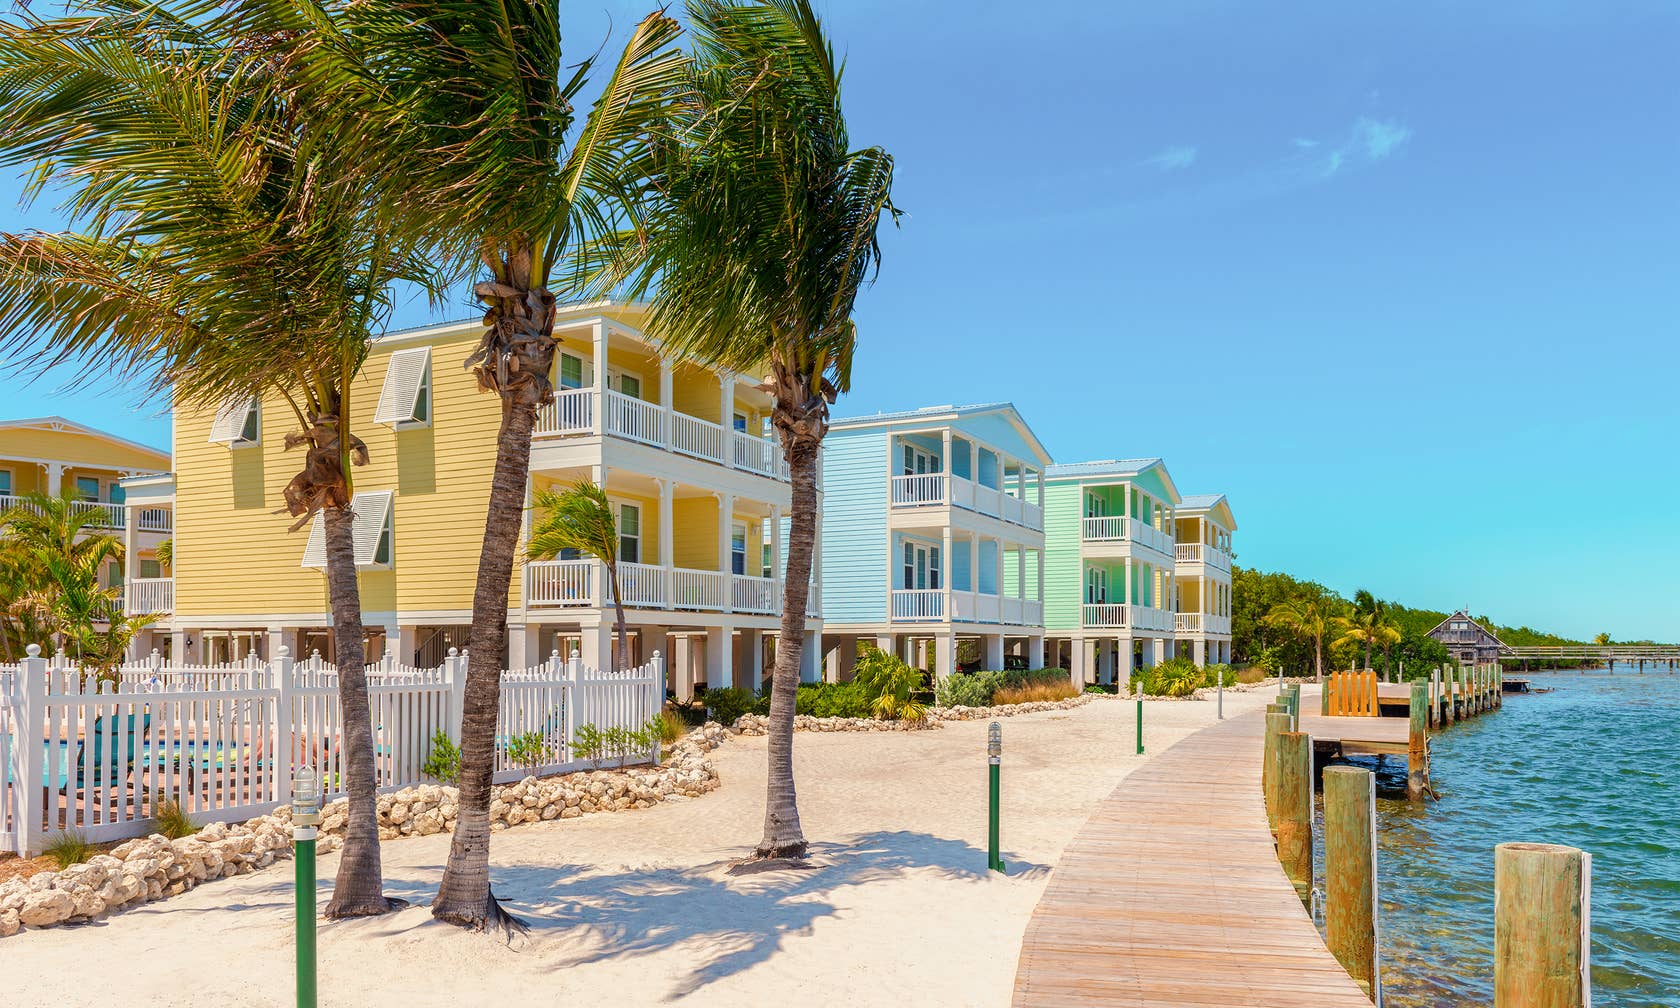 Case de vacanță în Florida Keys